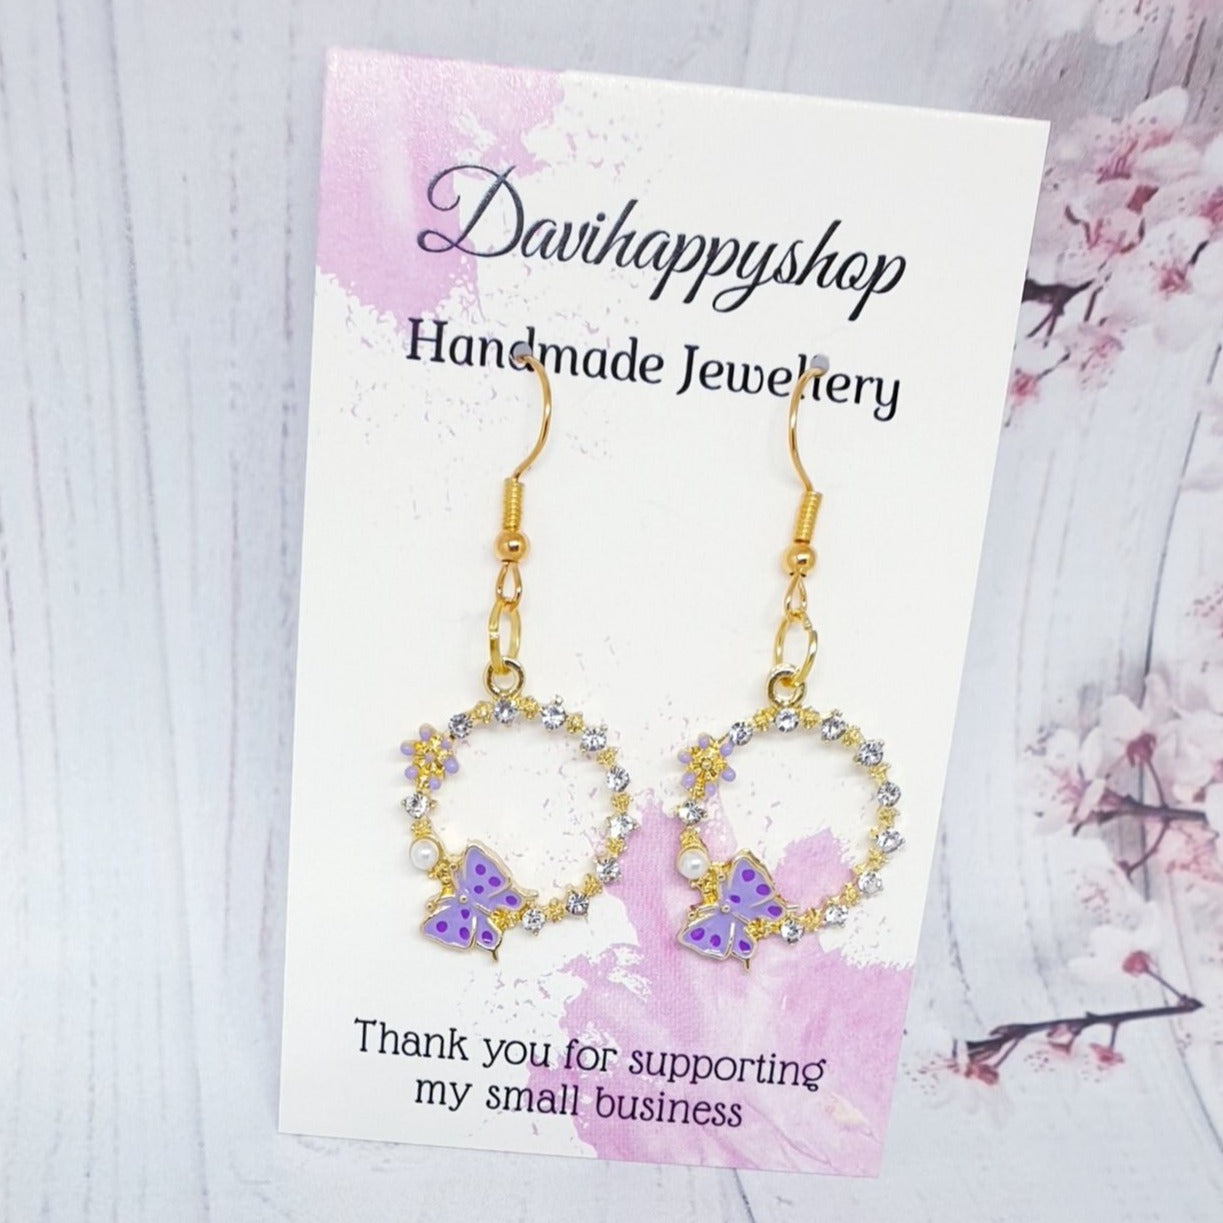 Handmade earrings,handmade jewelry, dangle earrings,butterfly earrings